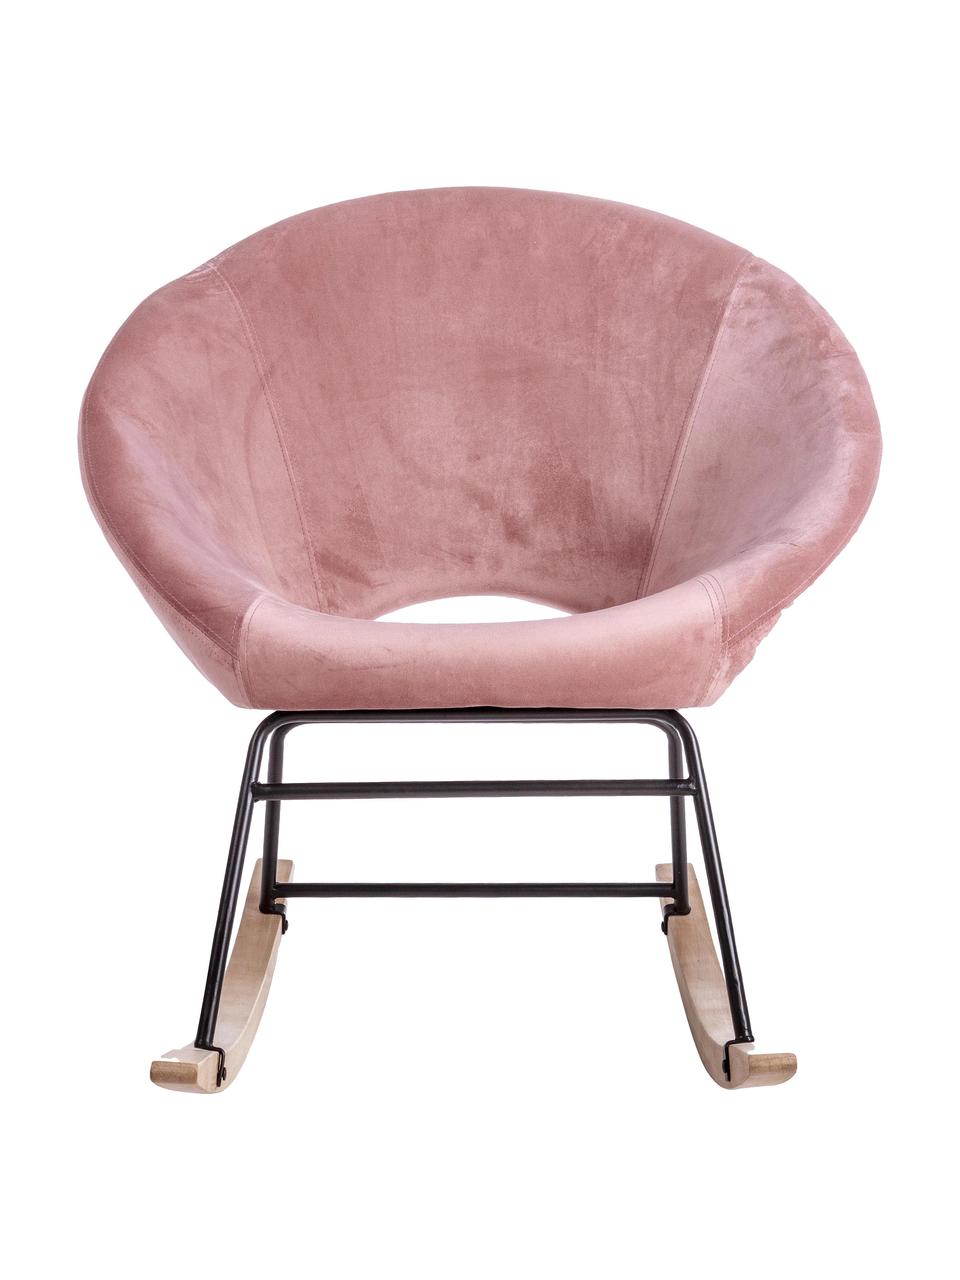 Fluwelen schommelstoel Annika in roze, Bekleding: polyester fluweel, Frame: gepoedercoat metaal, Frame: multiplex, metaal, Fluweel roze, B 74 x D 77 cm